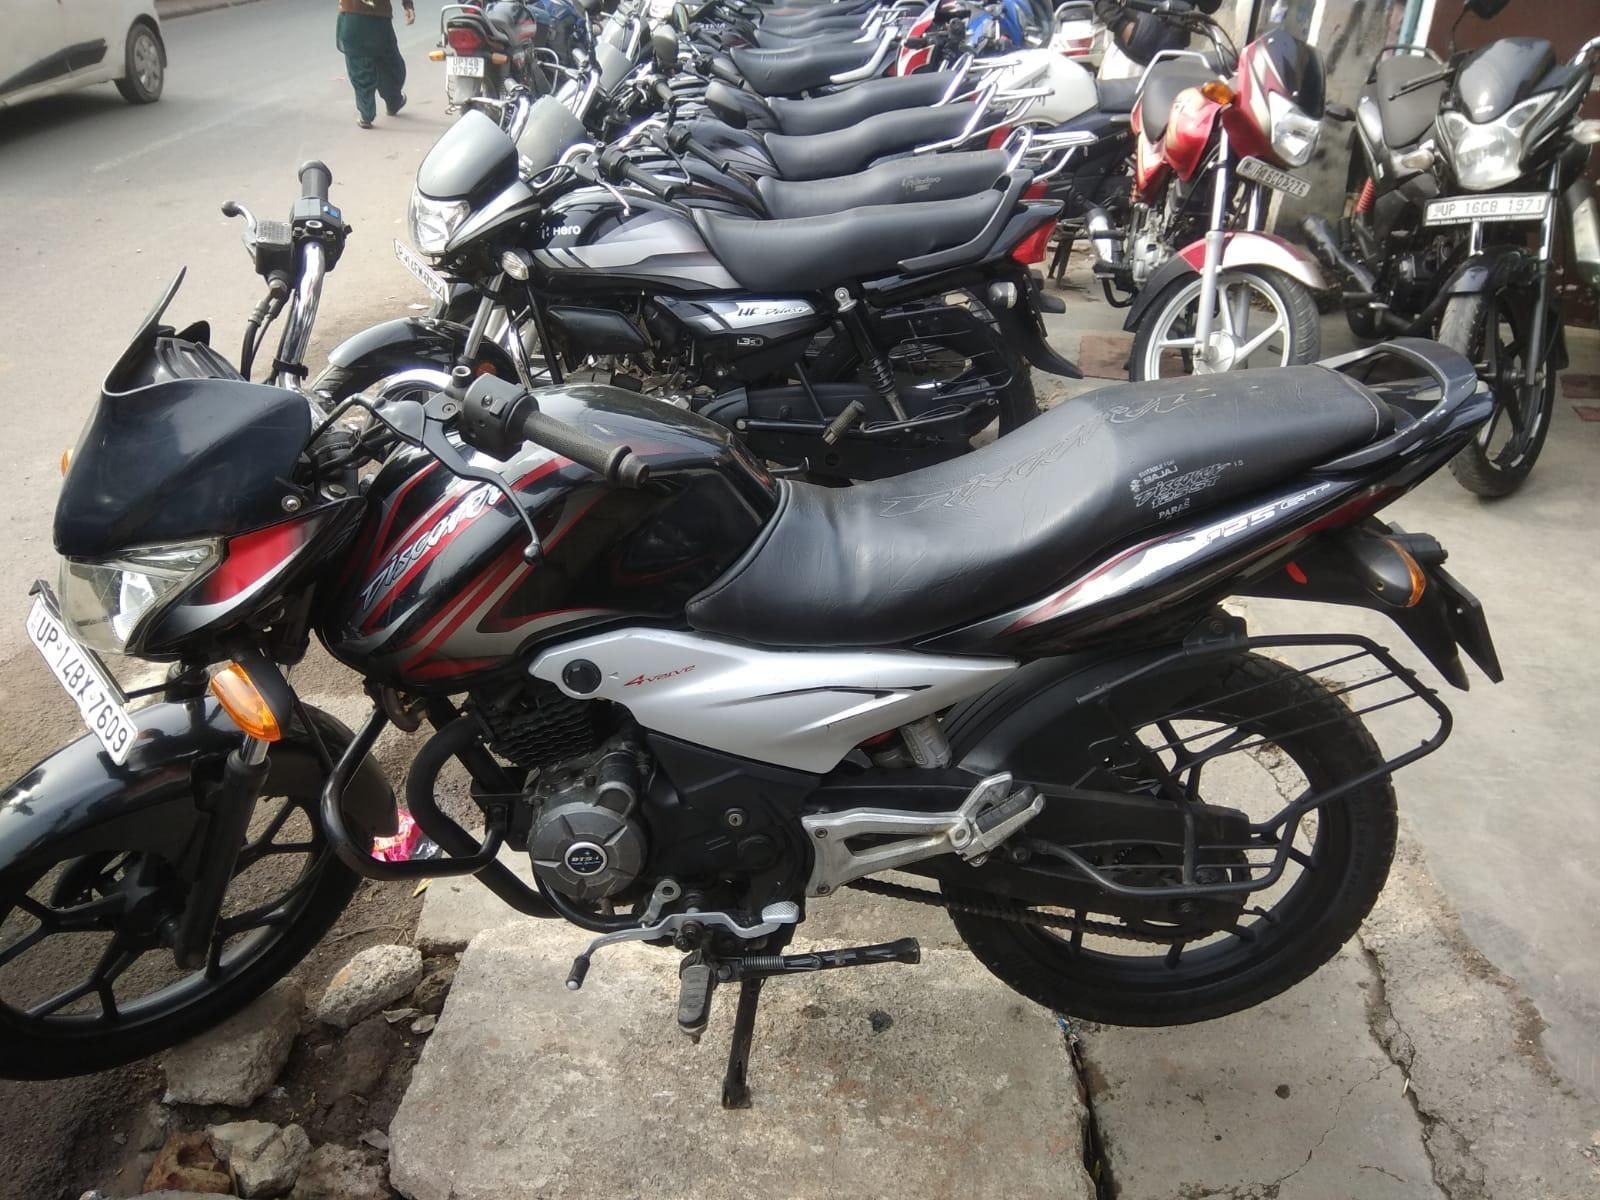 Used Bajaj Discover 125cc 2013